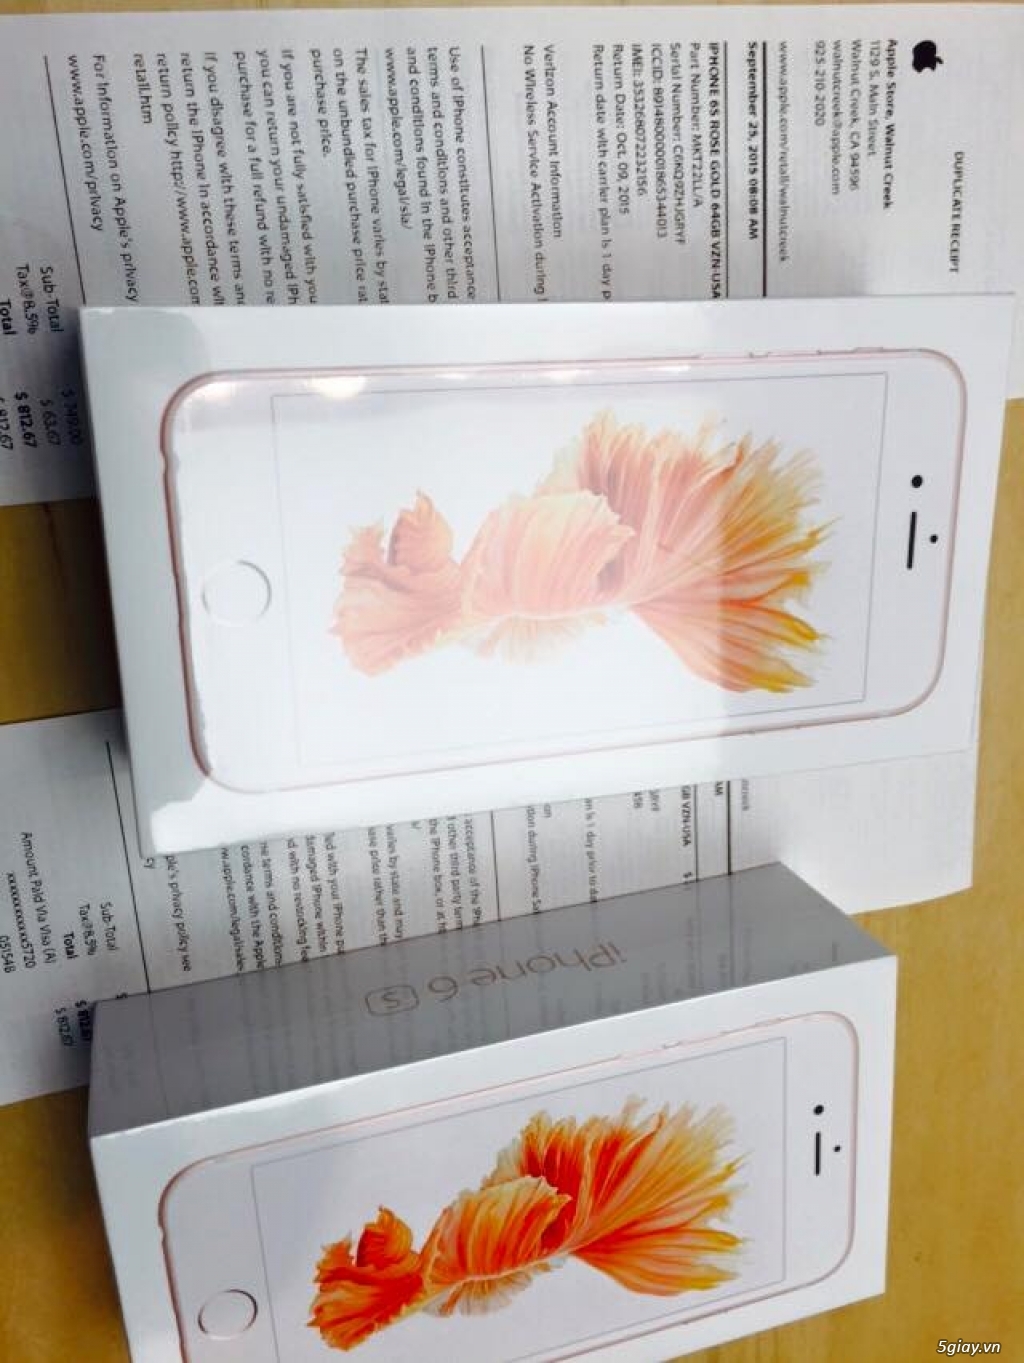 * Có Sẵn ở Sài Gòn * 2 x iPhone 6S 64Gbs Pink (Rose) * USA Receipts*